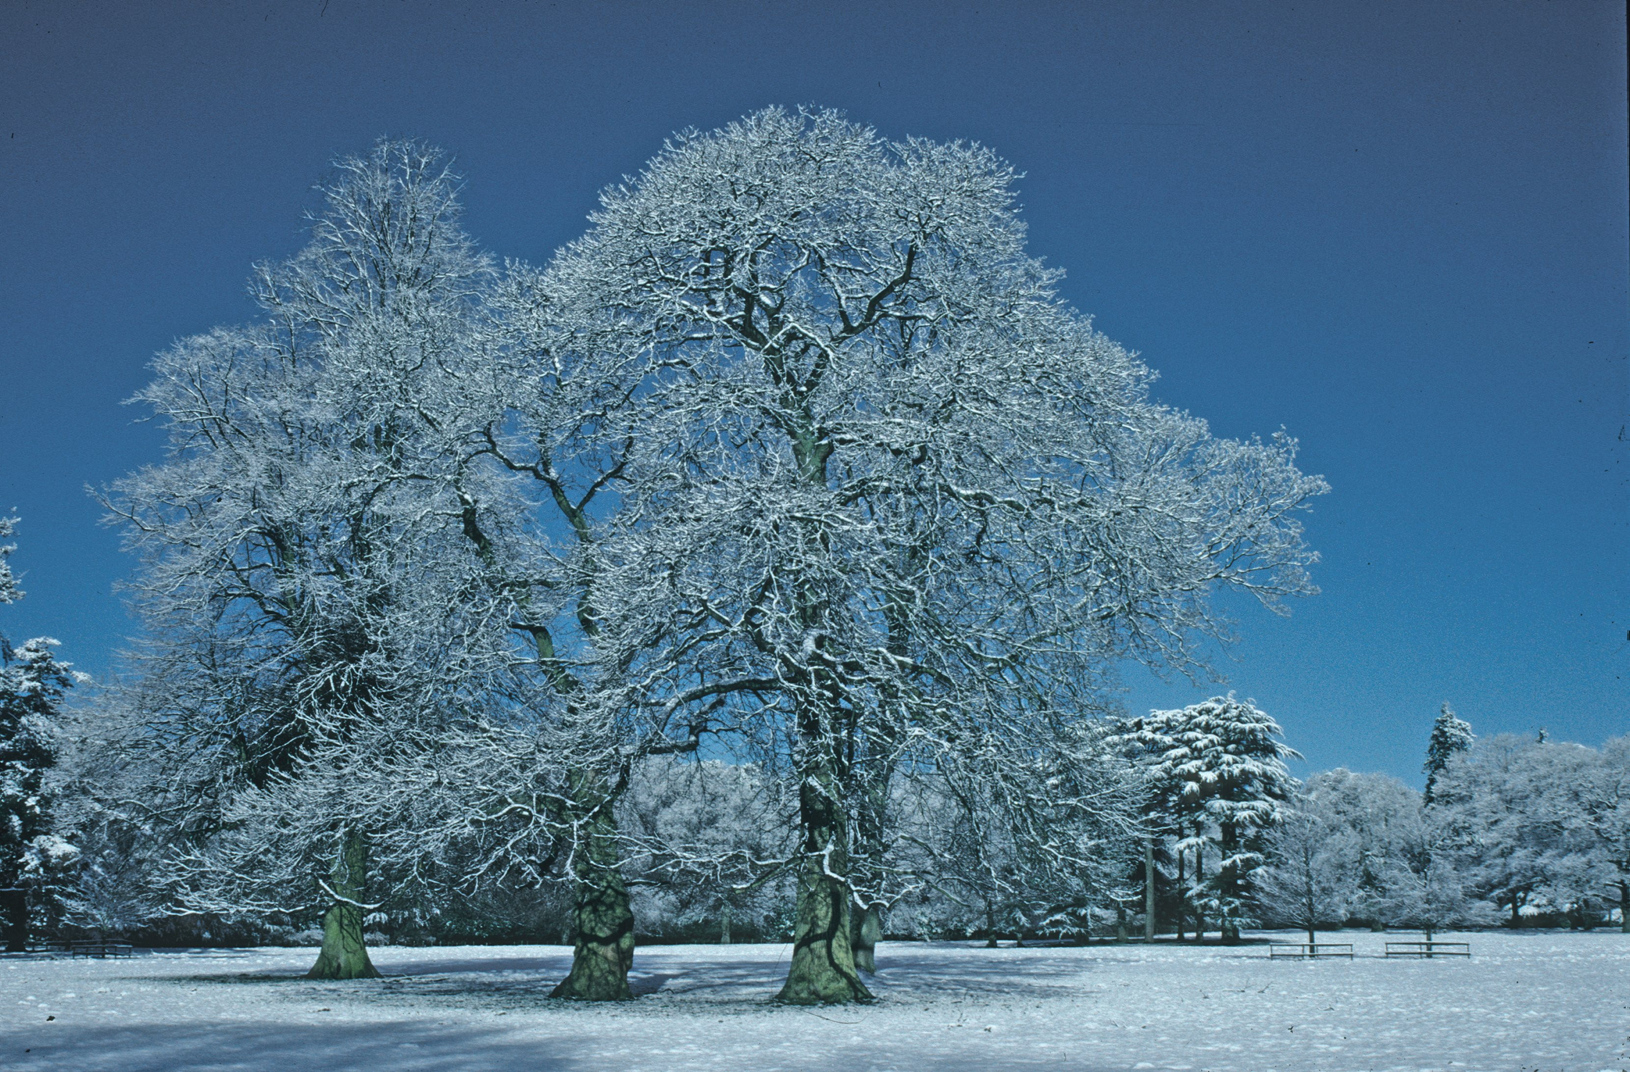 Pedunculate oak, Quercus robur, in snow at Westonbirt Arboretum, Gloucestershire.